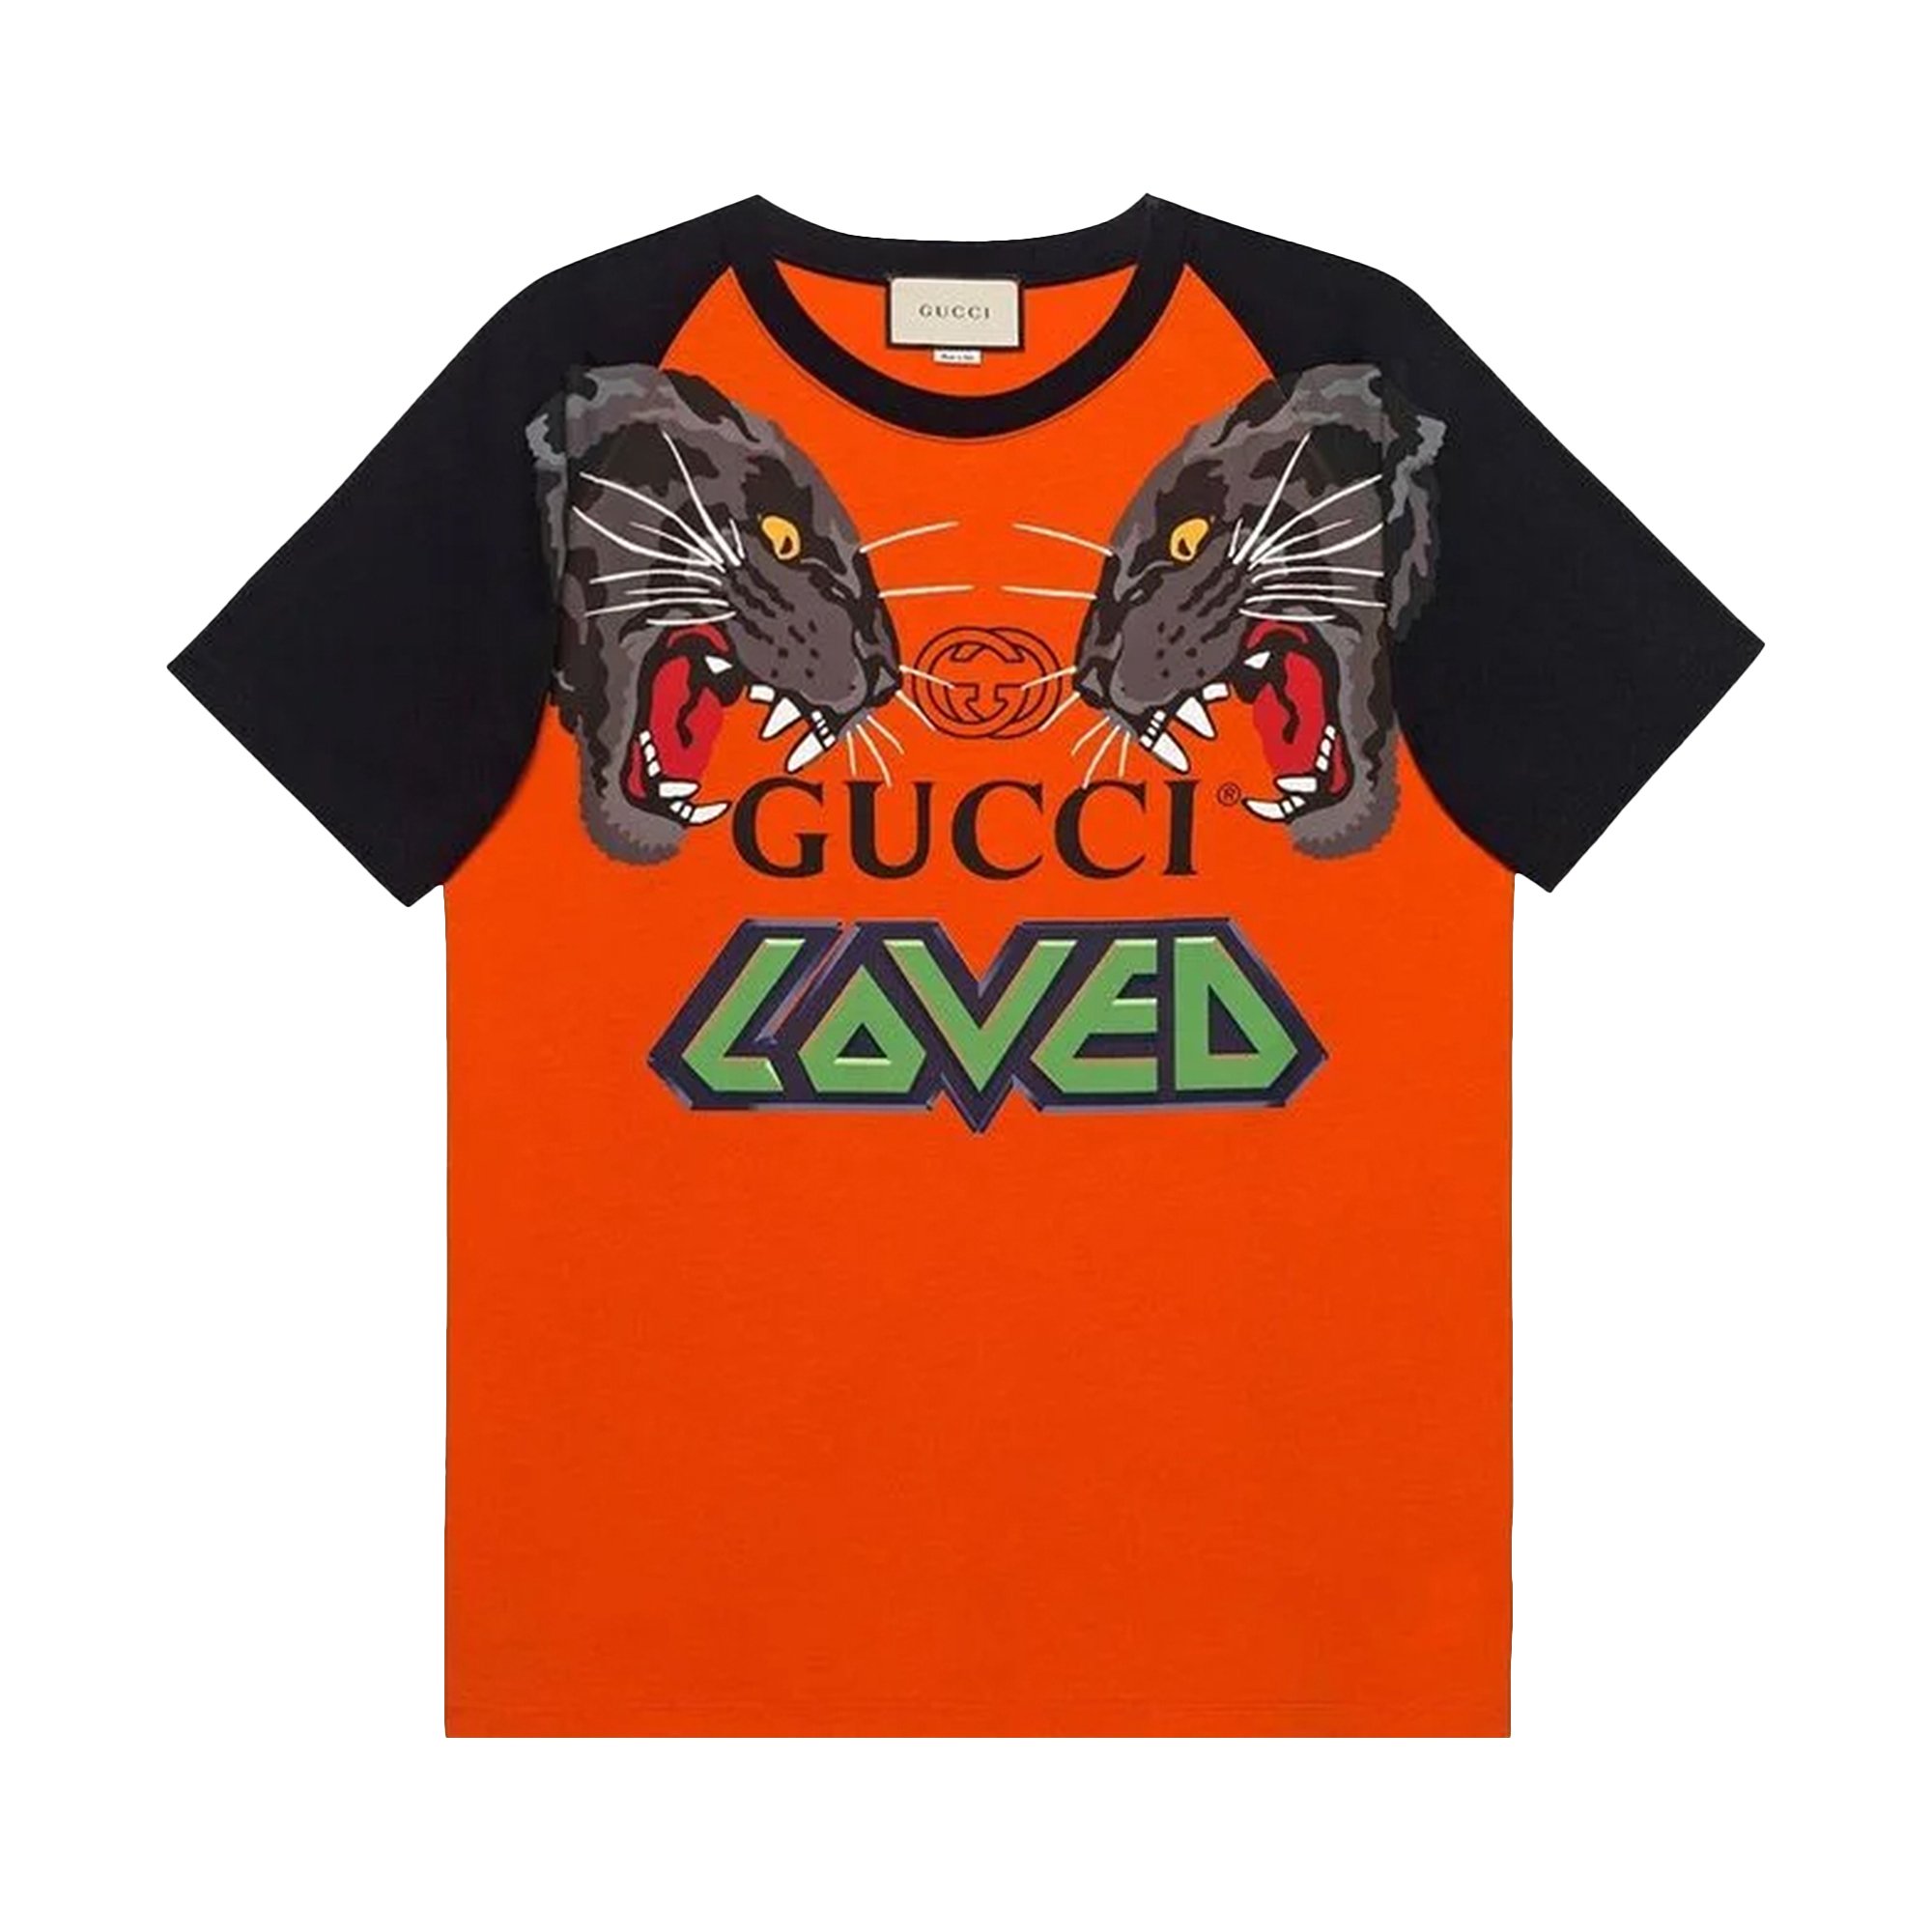 Gucci Loved Tiger Print Crew Neck 'Multicolor'